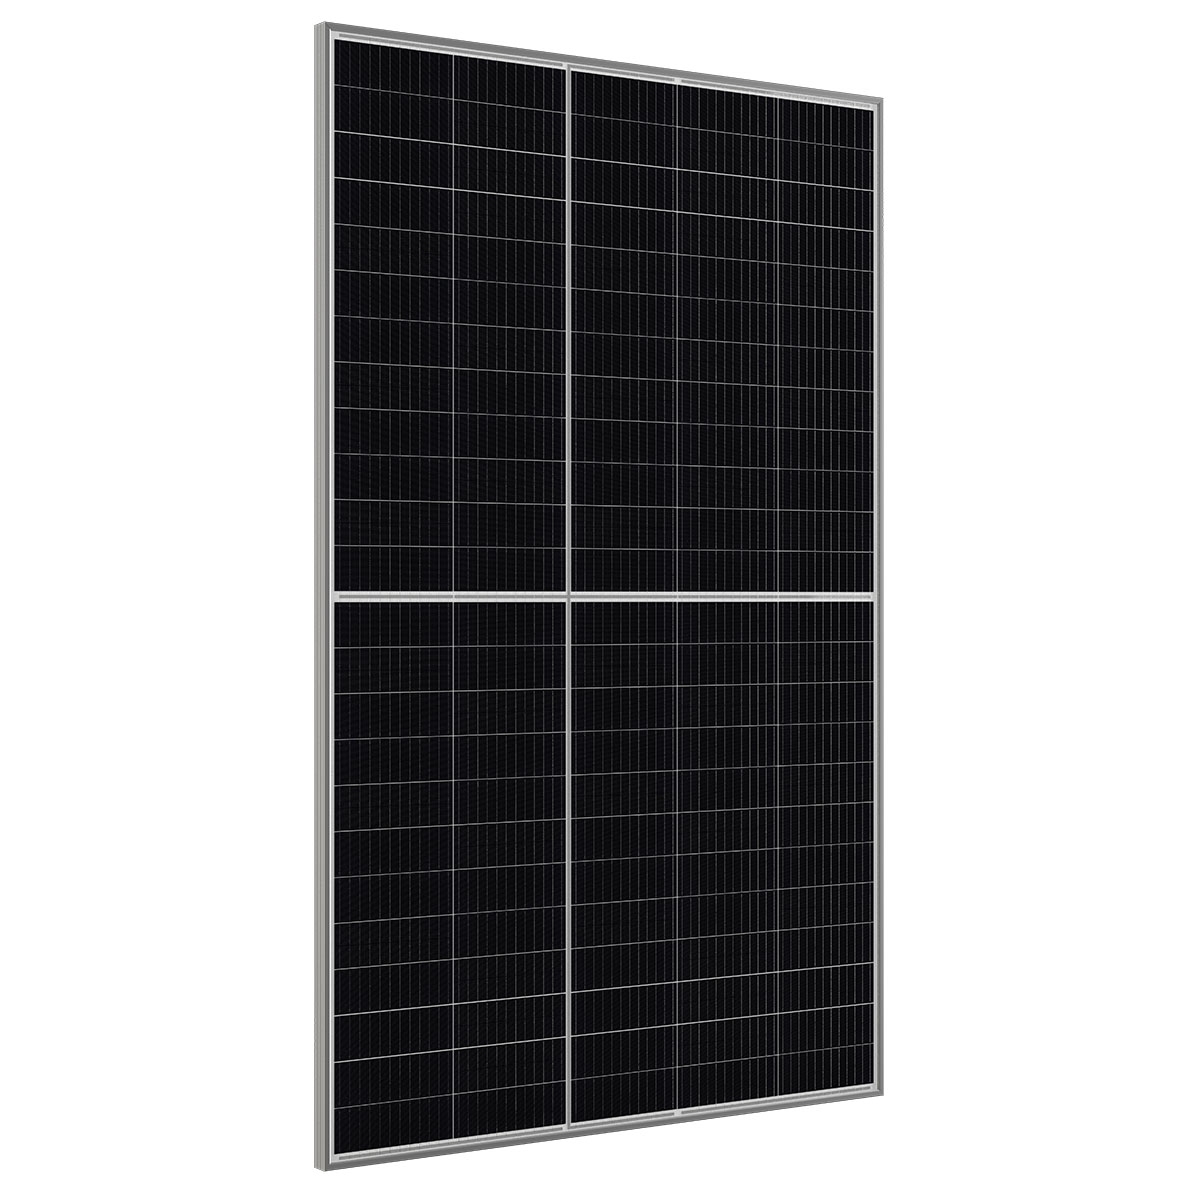 CW Enerji 395Wp M12 120PM Cells Half-Cut / F MB Solar Panel